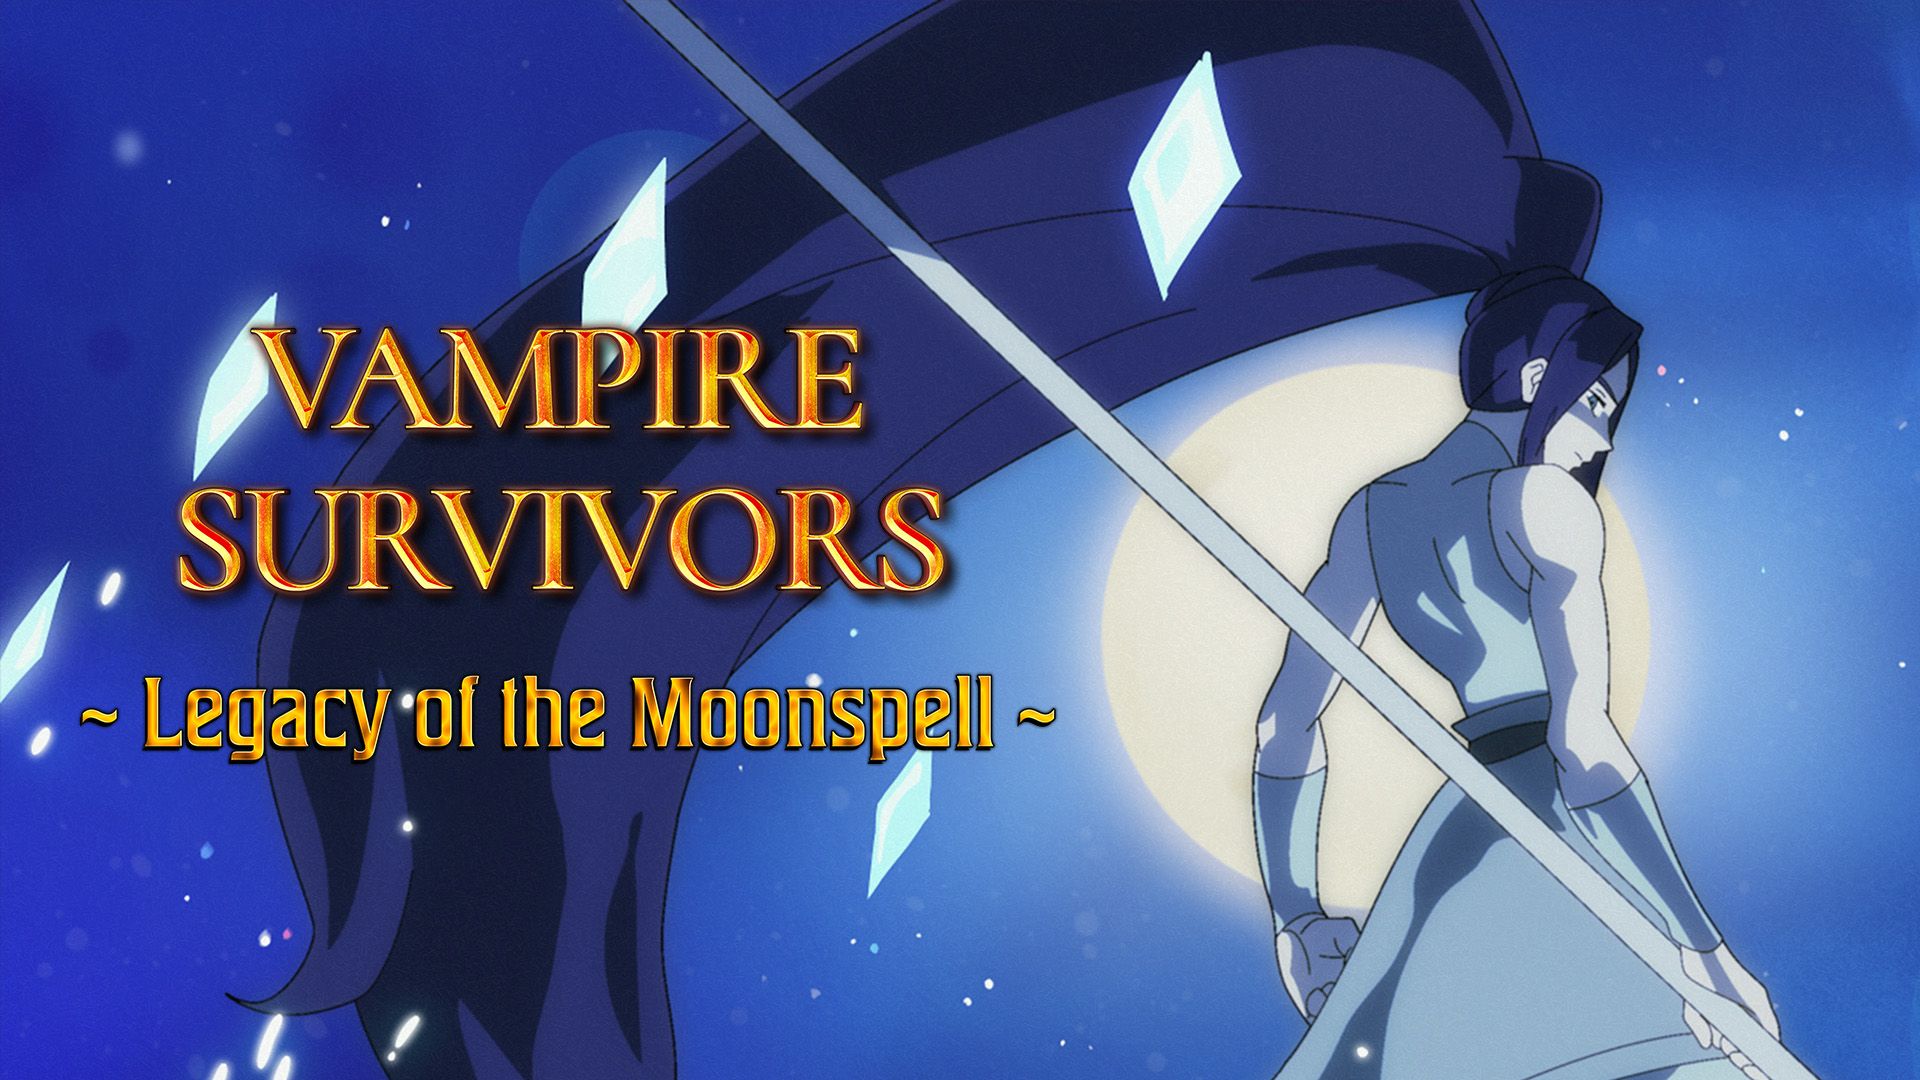 Vampire Survivors' First DLC Casts a Moonspell Today